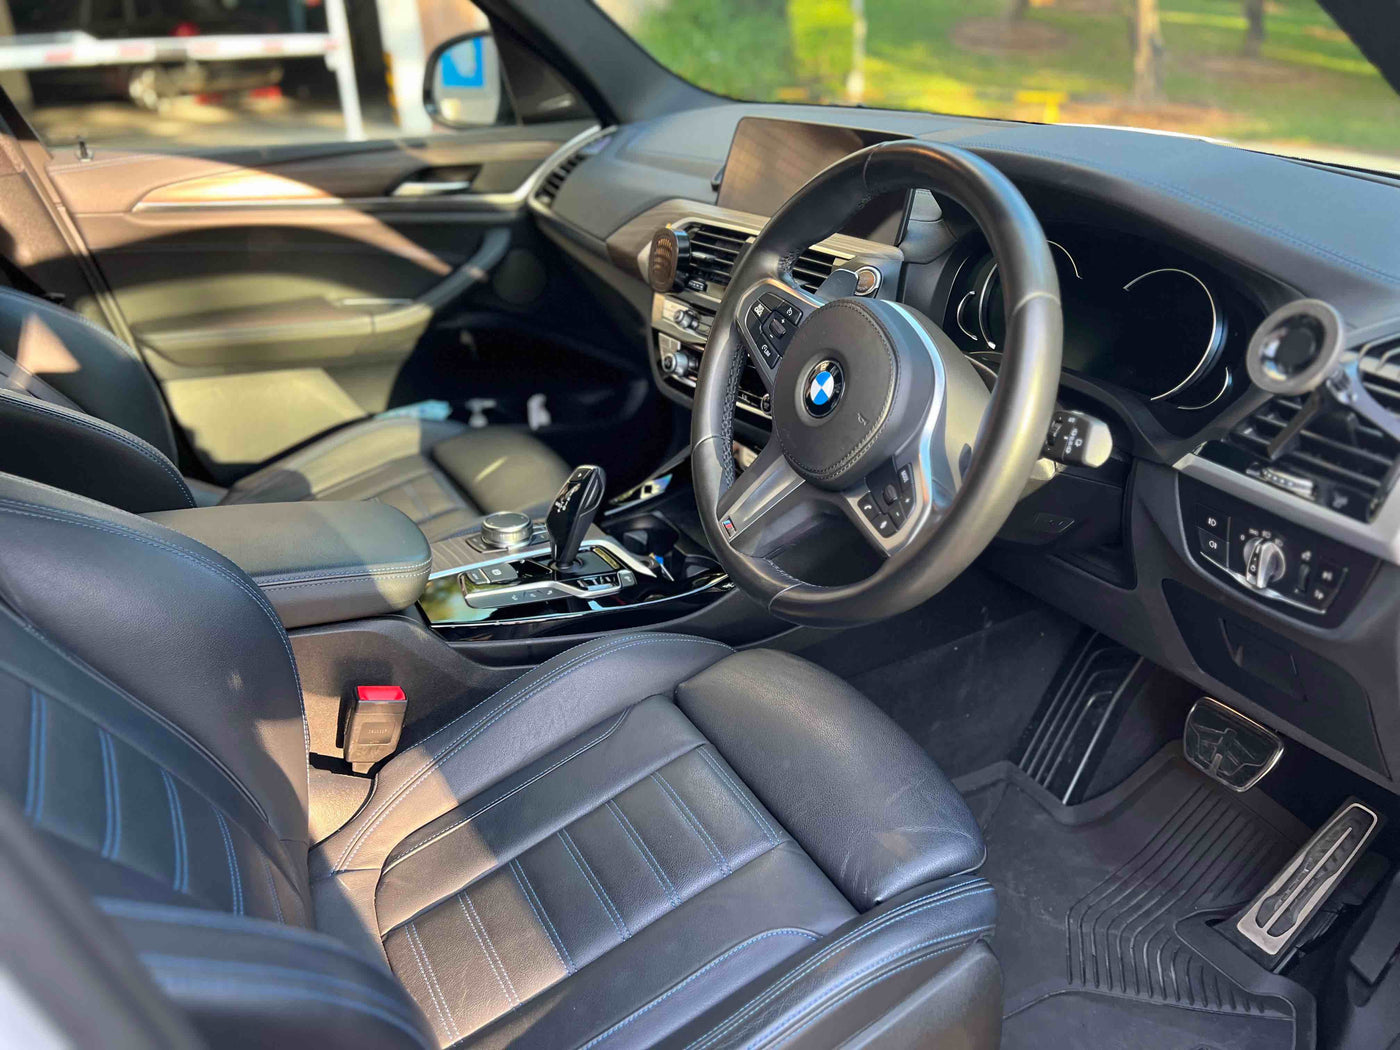 BMW X3 M40iA 2018